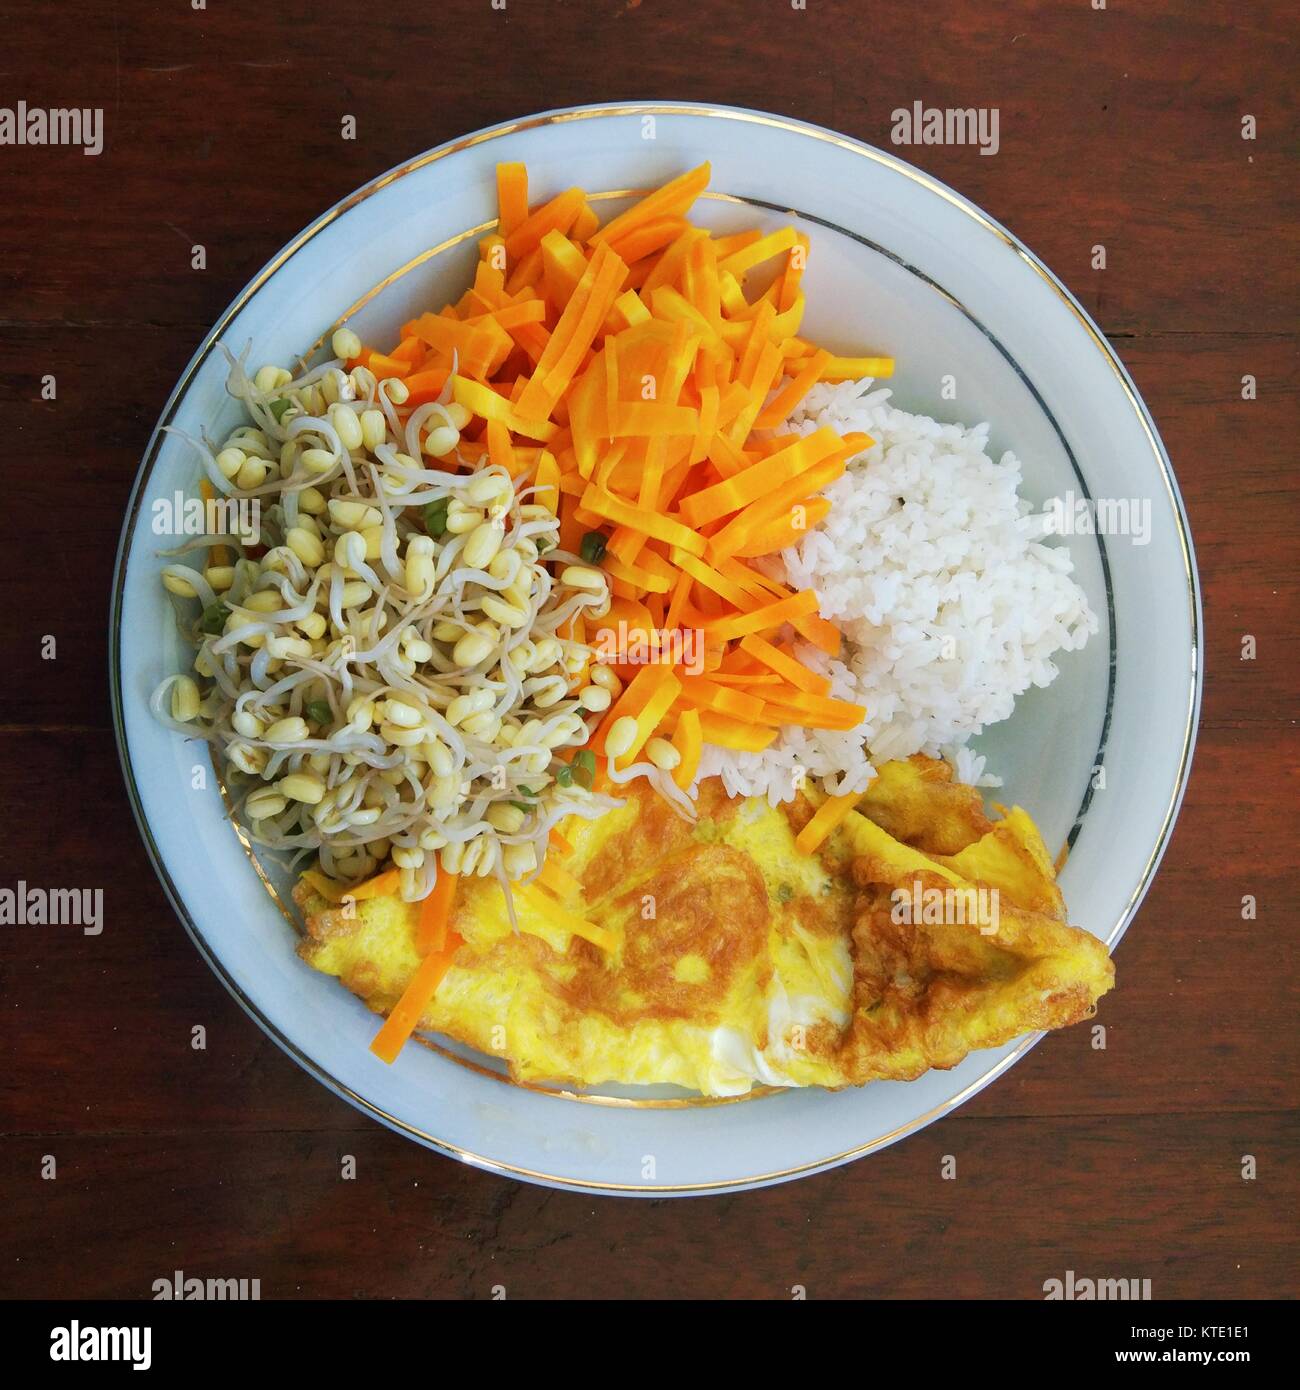 Indonesien traditionelles Essen; Reis, sayur pecel und Ei. Stockfoto